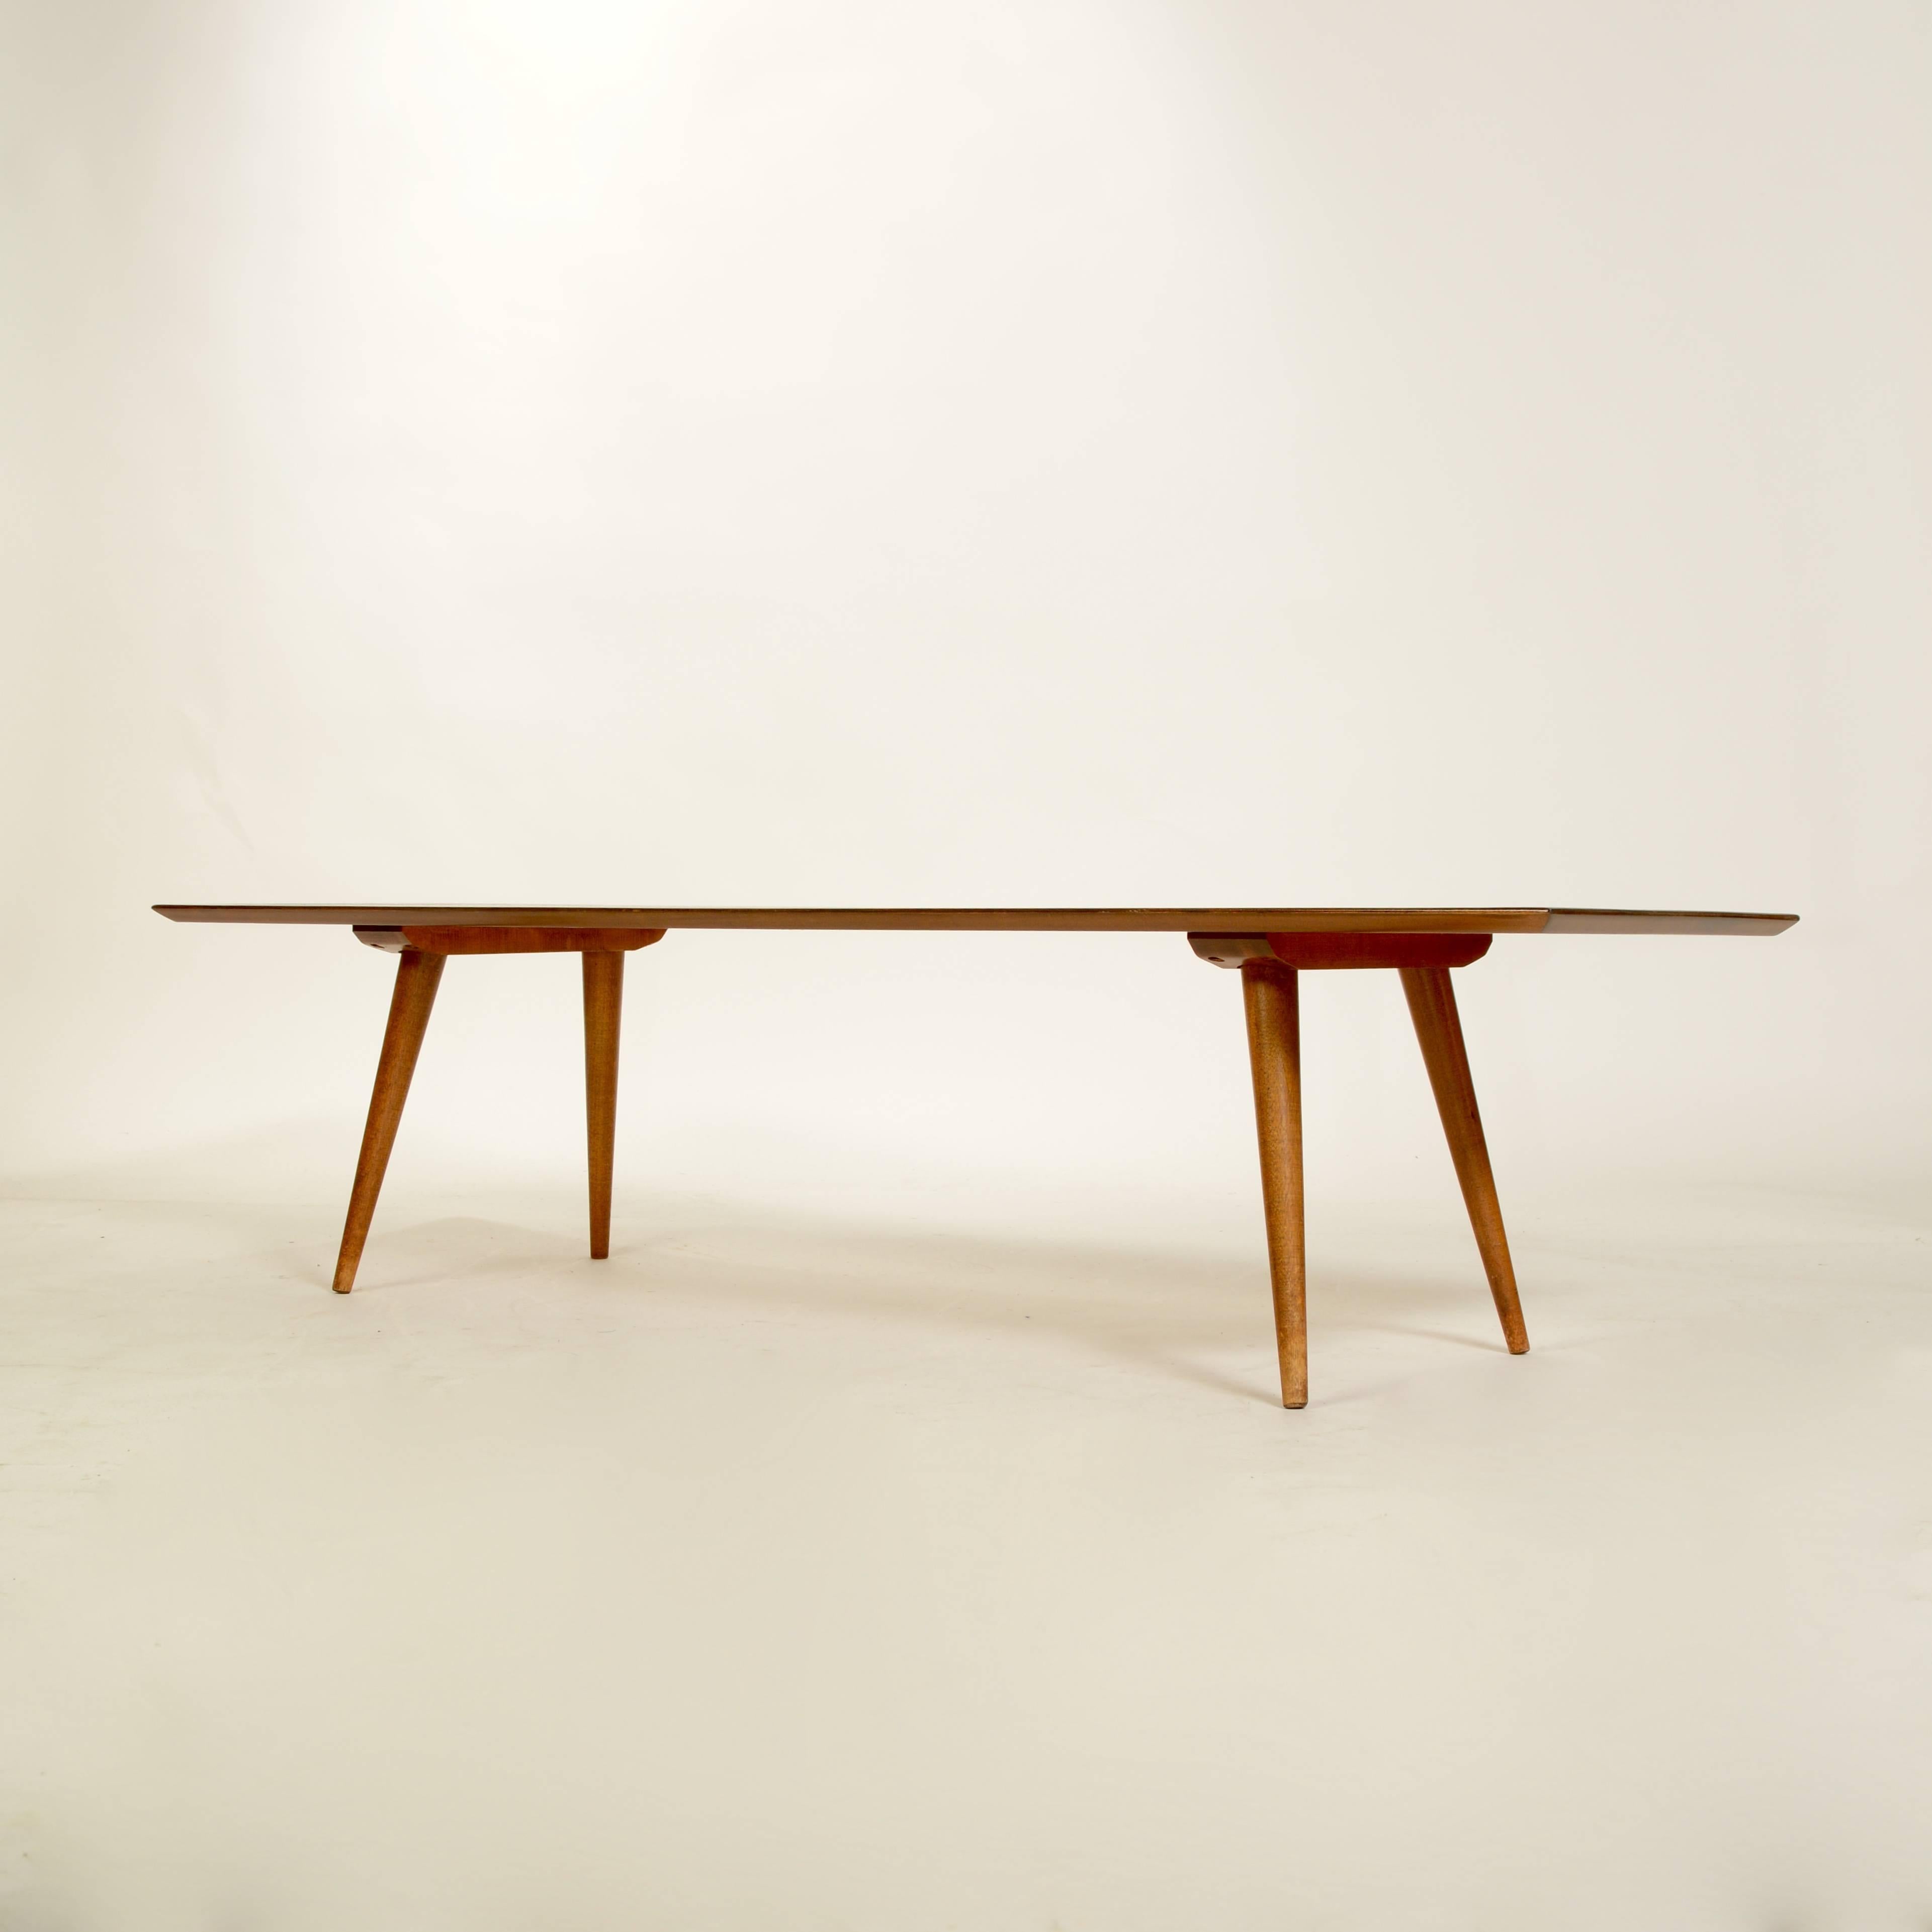 Dies ist ein ikonischer Planner-Gruppentisch von Paul Mccobb.  Dieser Tisch aus massivem Ahornholz wurde professionell in mittlerem Nussbaum nachgearbeitet.  